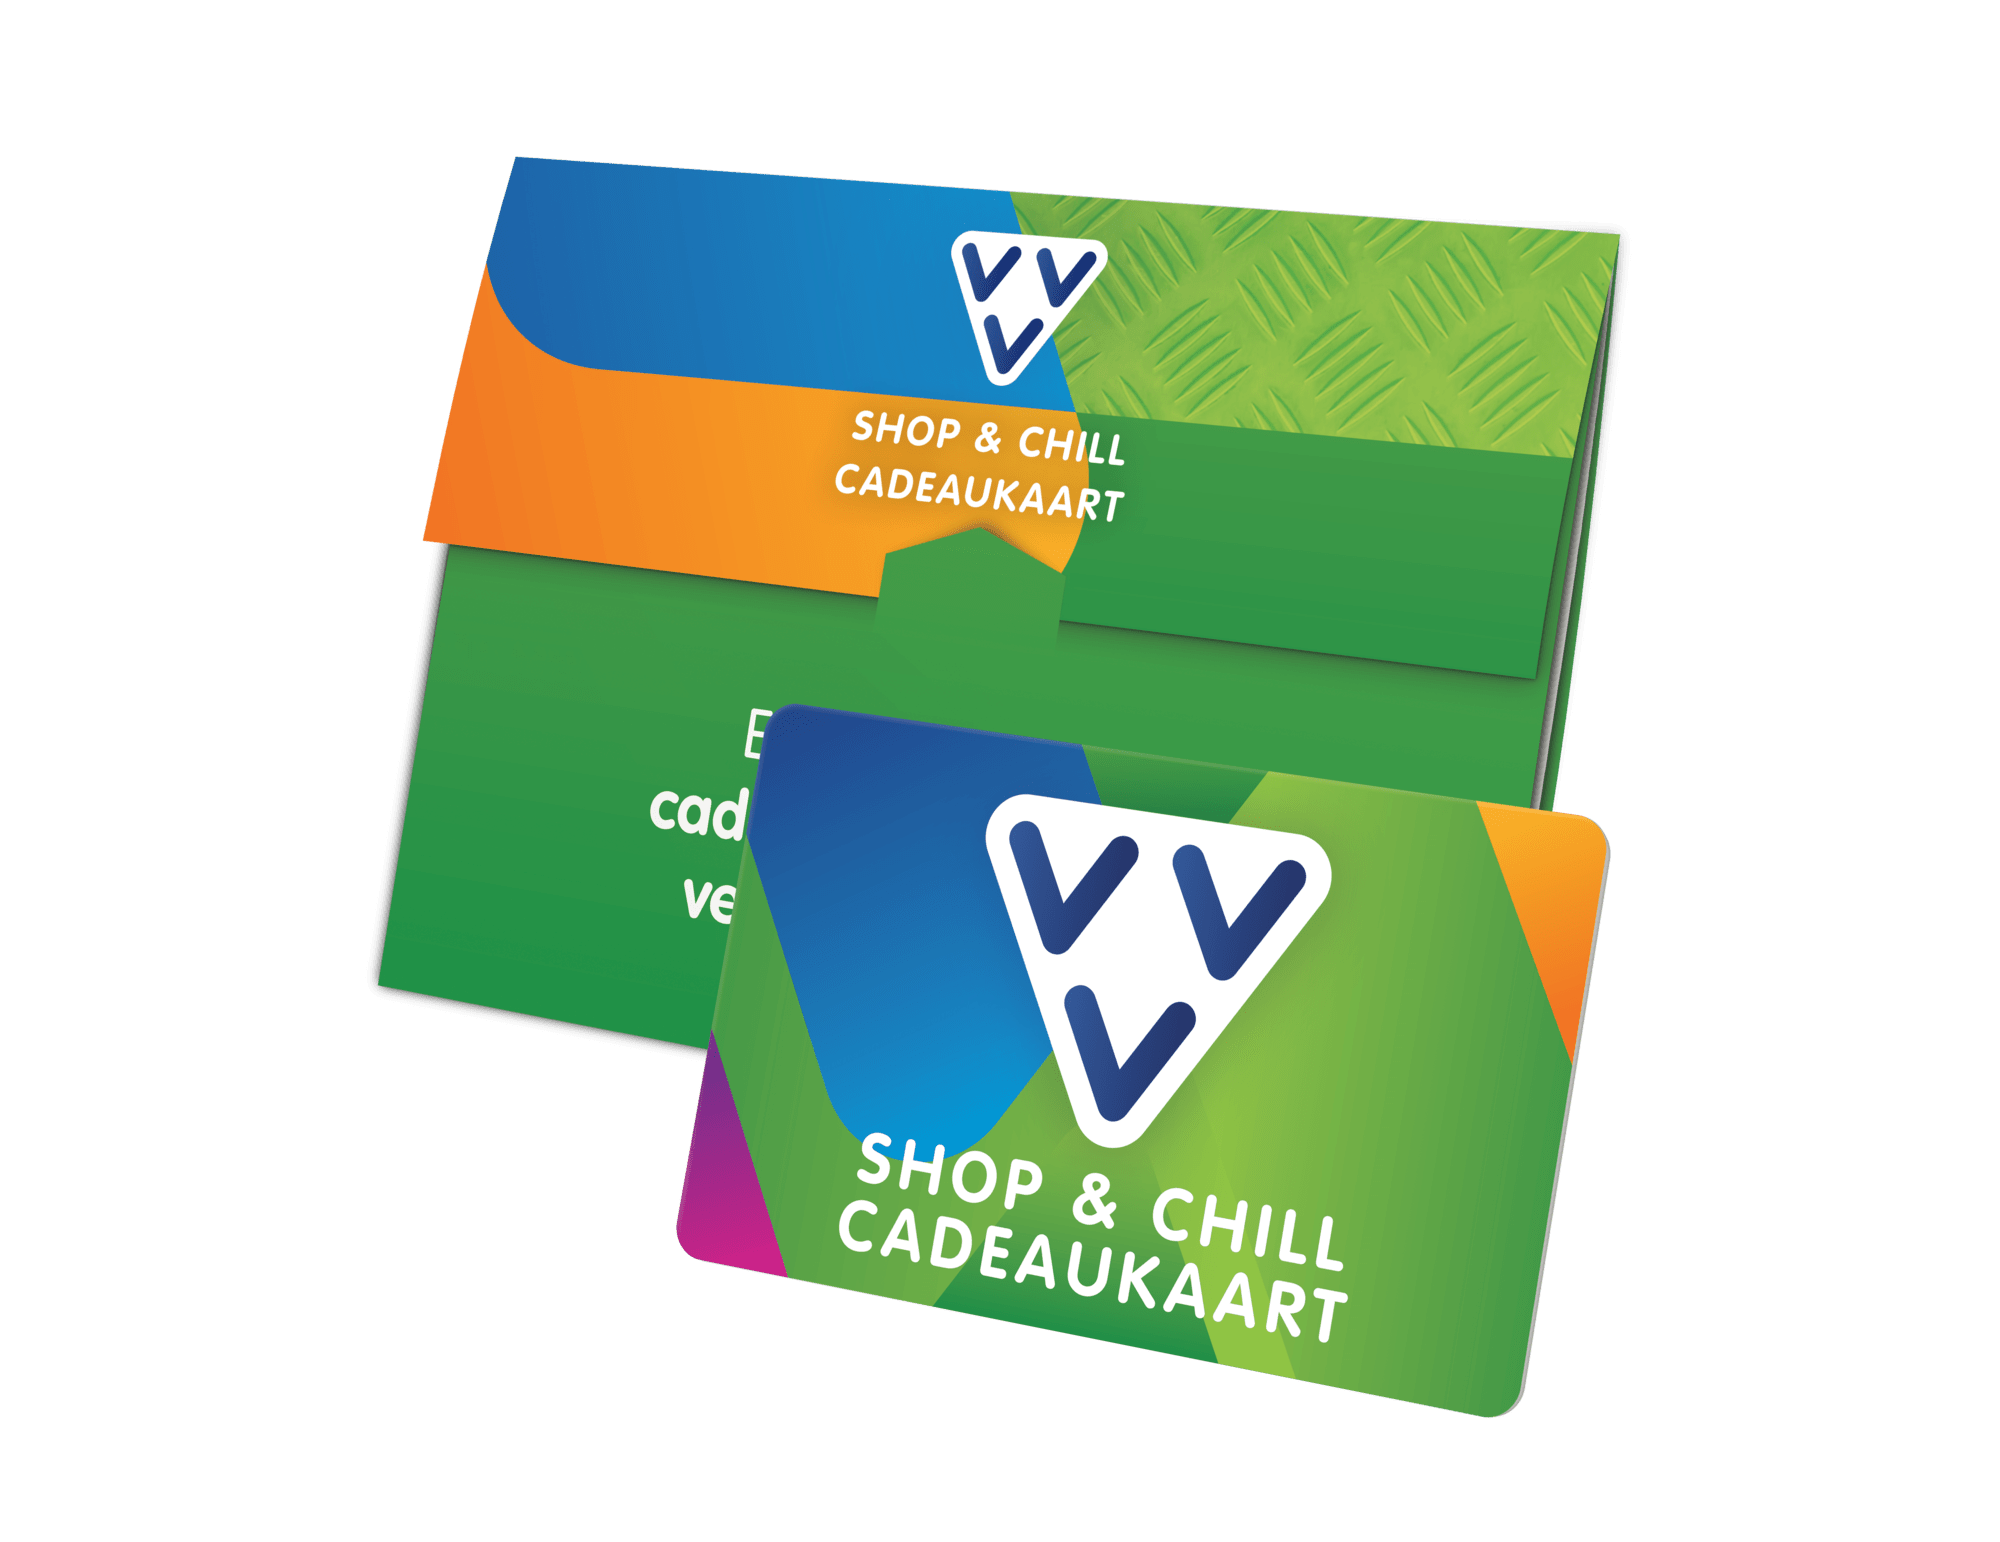 VVV Shop & Chill Cadeaukaart kaart en omslag